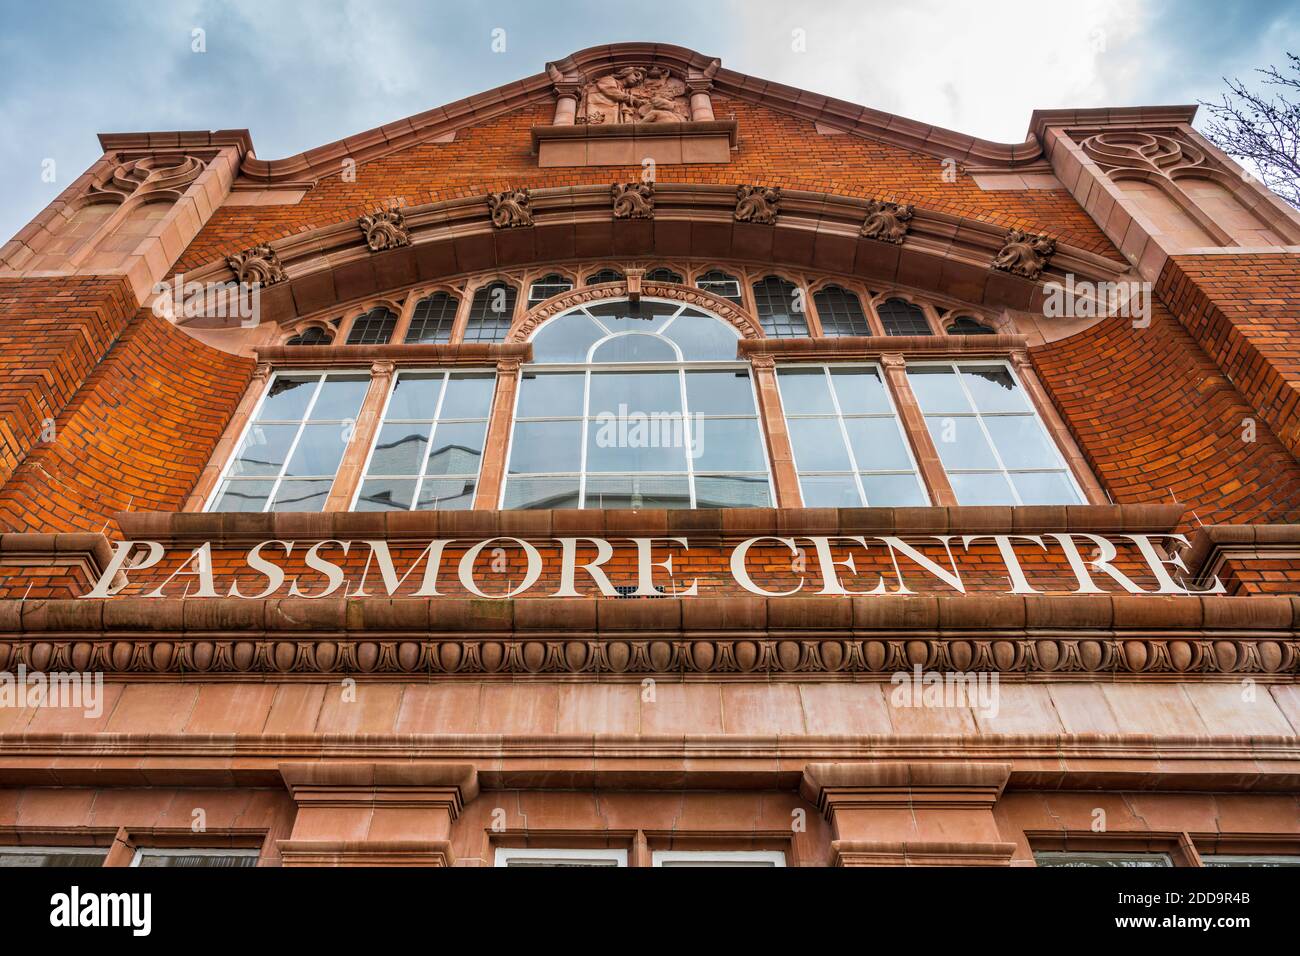 London South Bank University LSBU Passmore Centre - créé en 2018 pour soutenir l'apprentissage, les compétences et la formation dans le quartier de Southwark. Banque D'Images